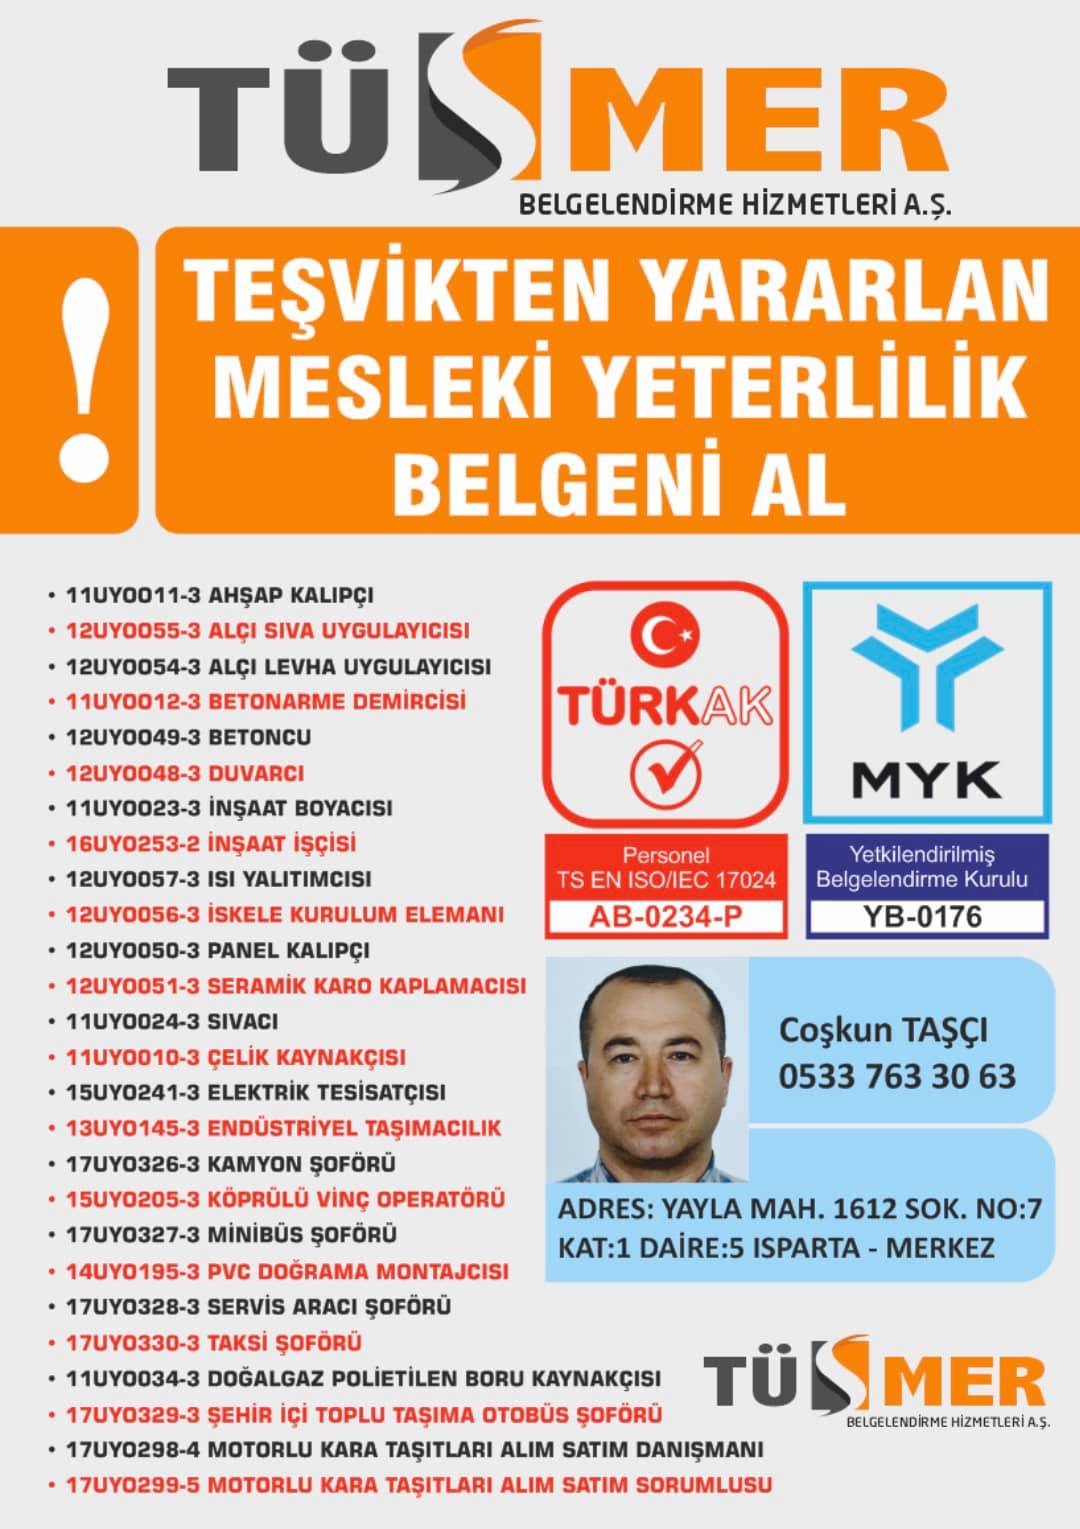 MYK MESLEKİ YETERLİLİK BELGESİ Cumhuriyet Beylikdüzü İstanbul